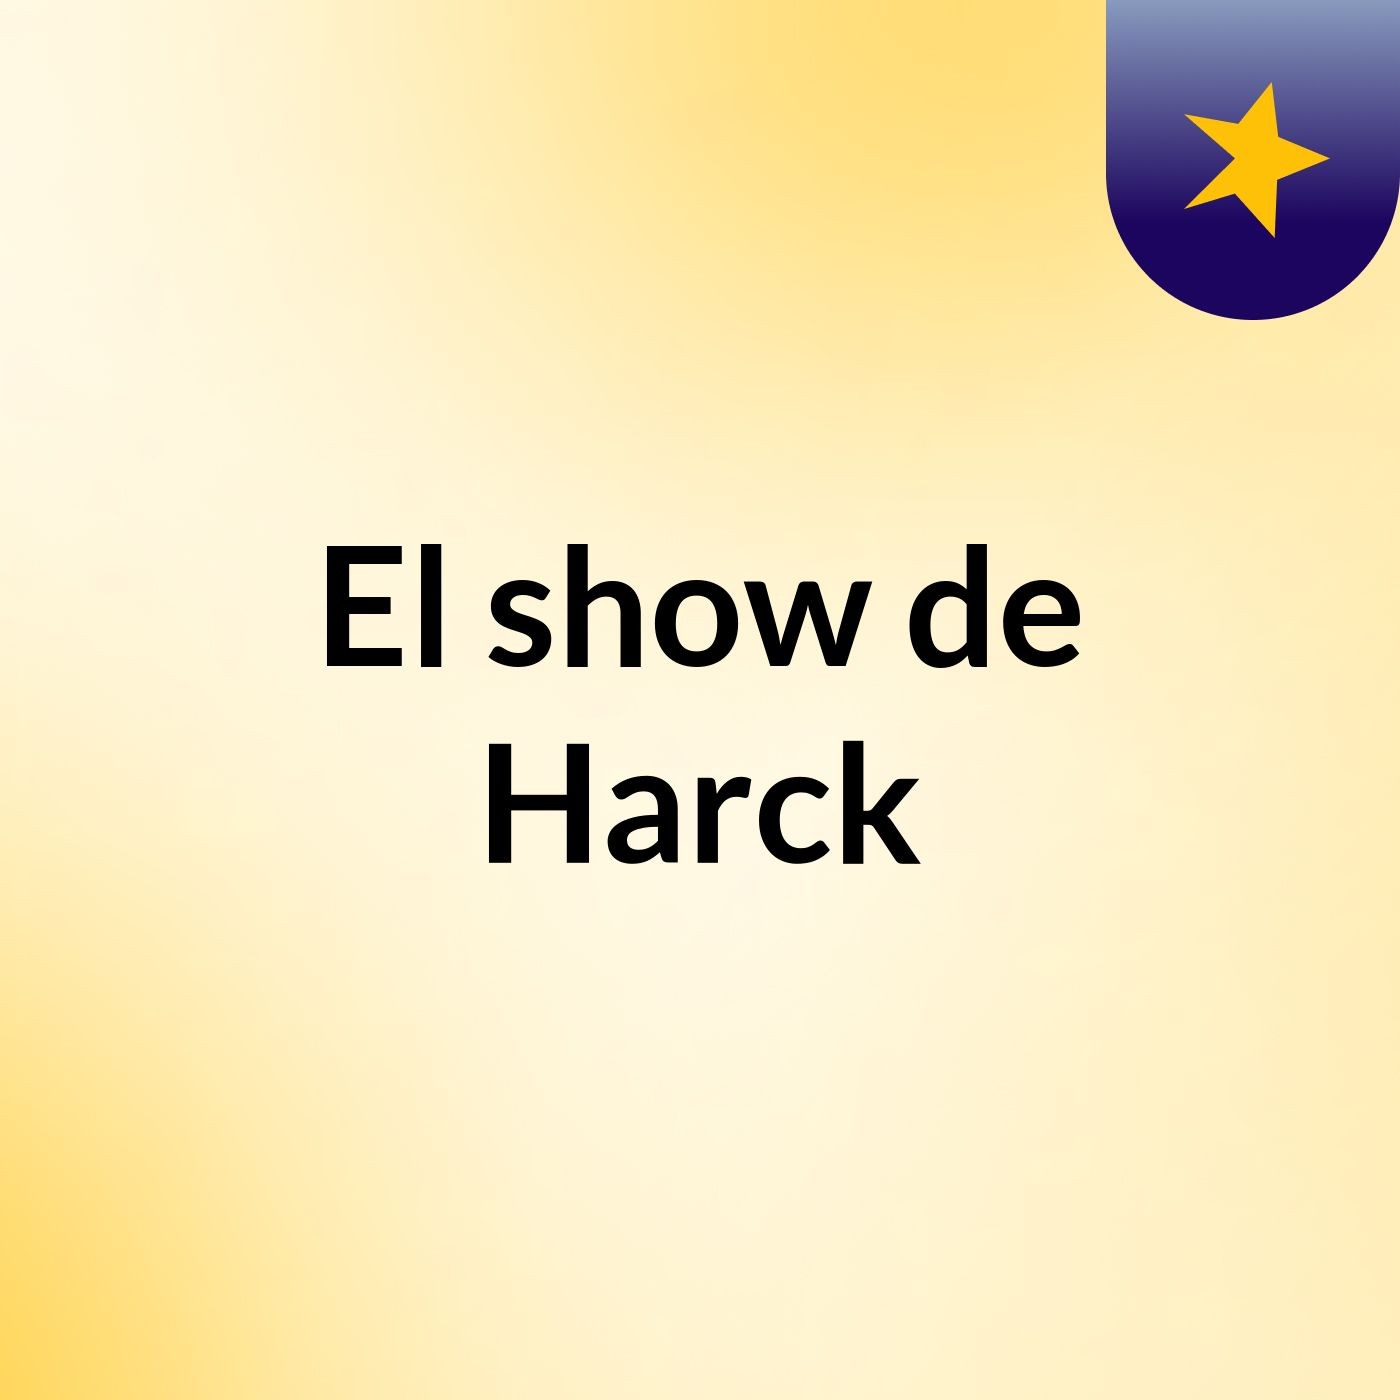 El show de Harck